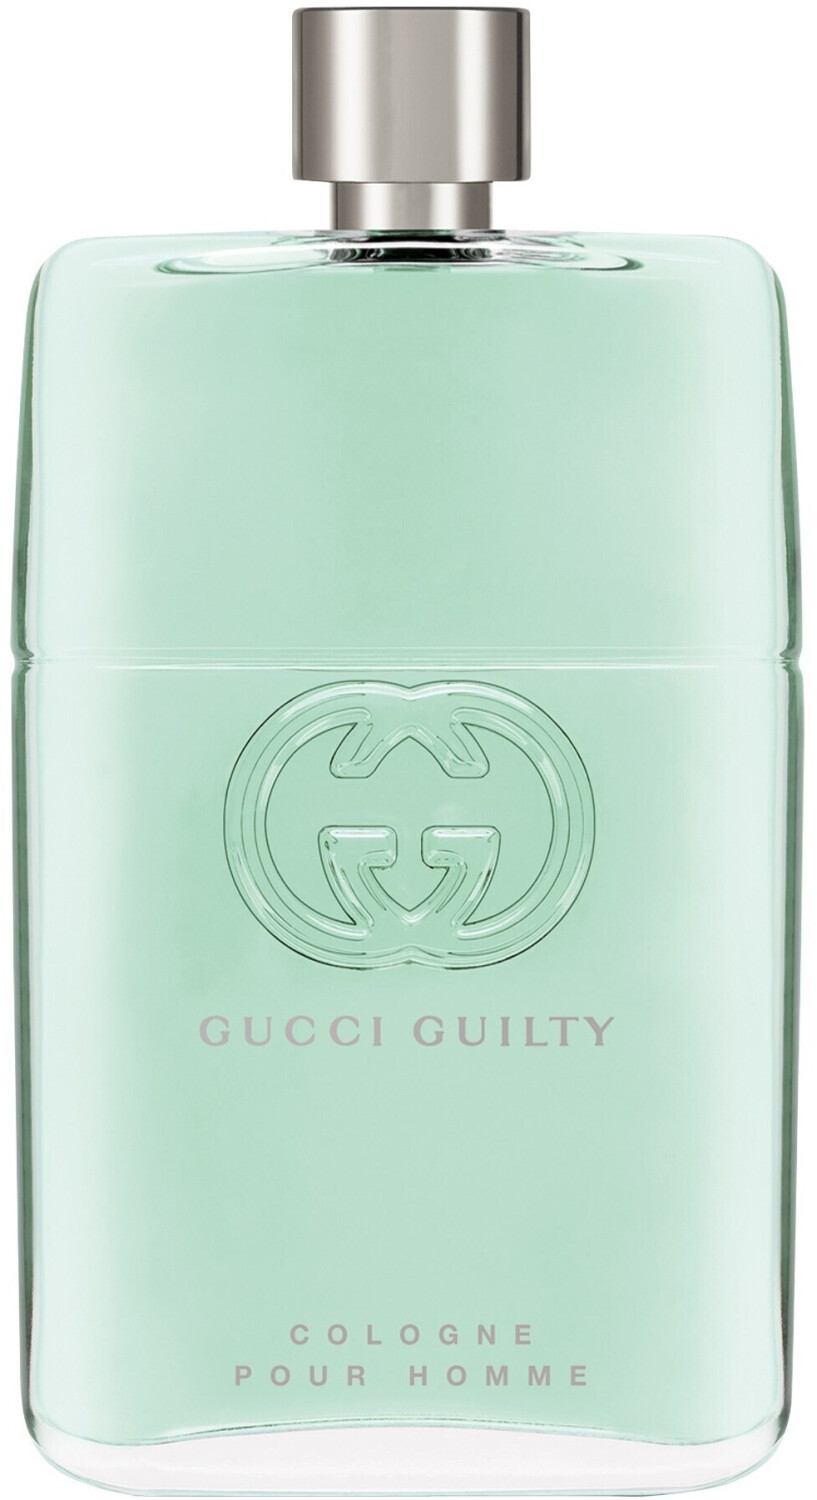 Gucci Guilty Cologne pour Homme Eau de Toilette (150ml)